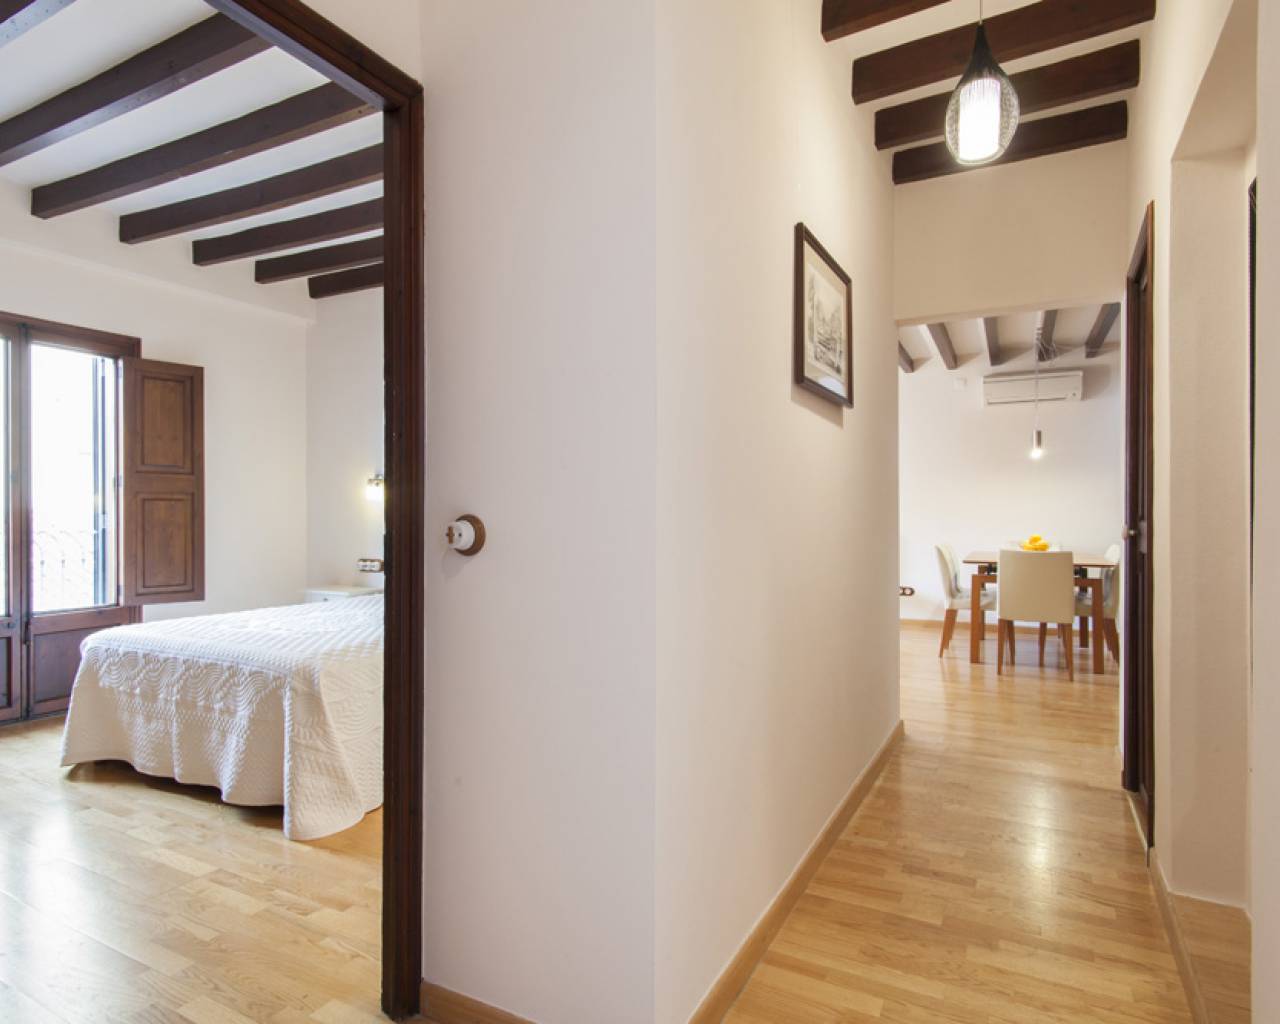 Property for Rent in Palma de Mallorca-estate agents in Mallorca